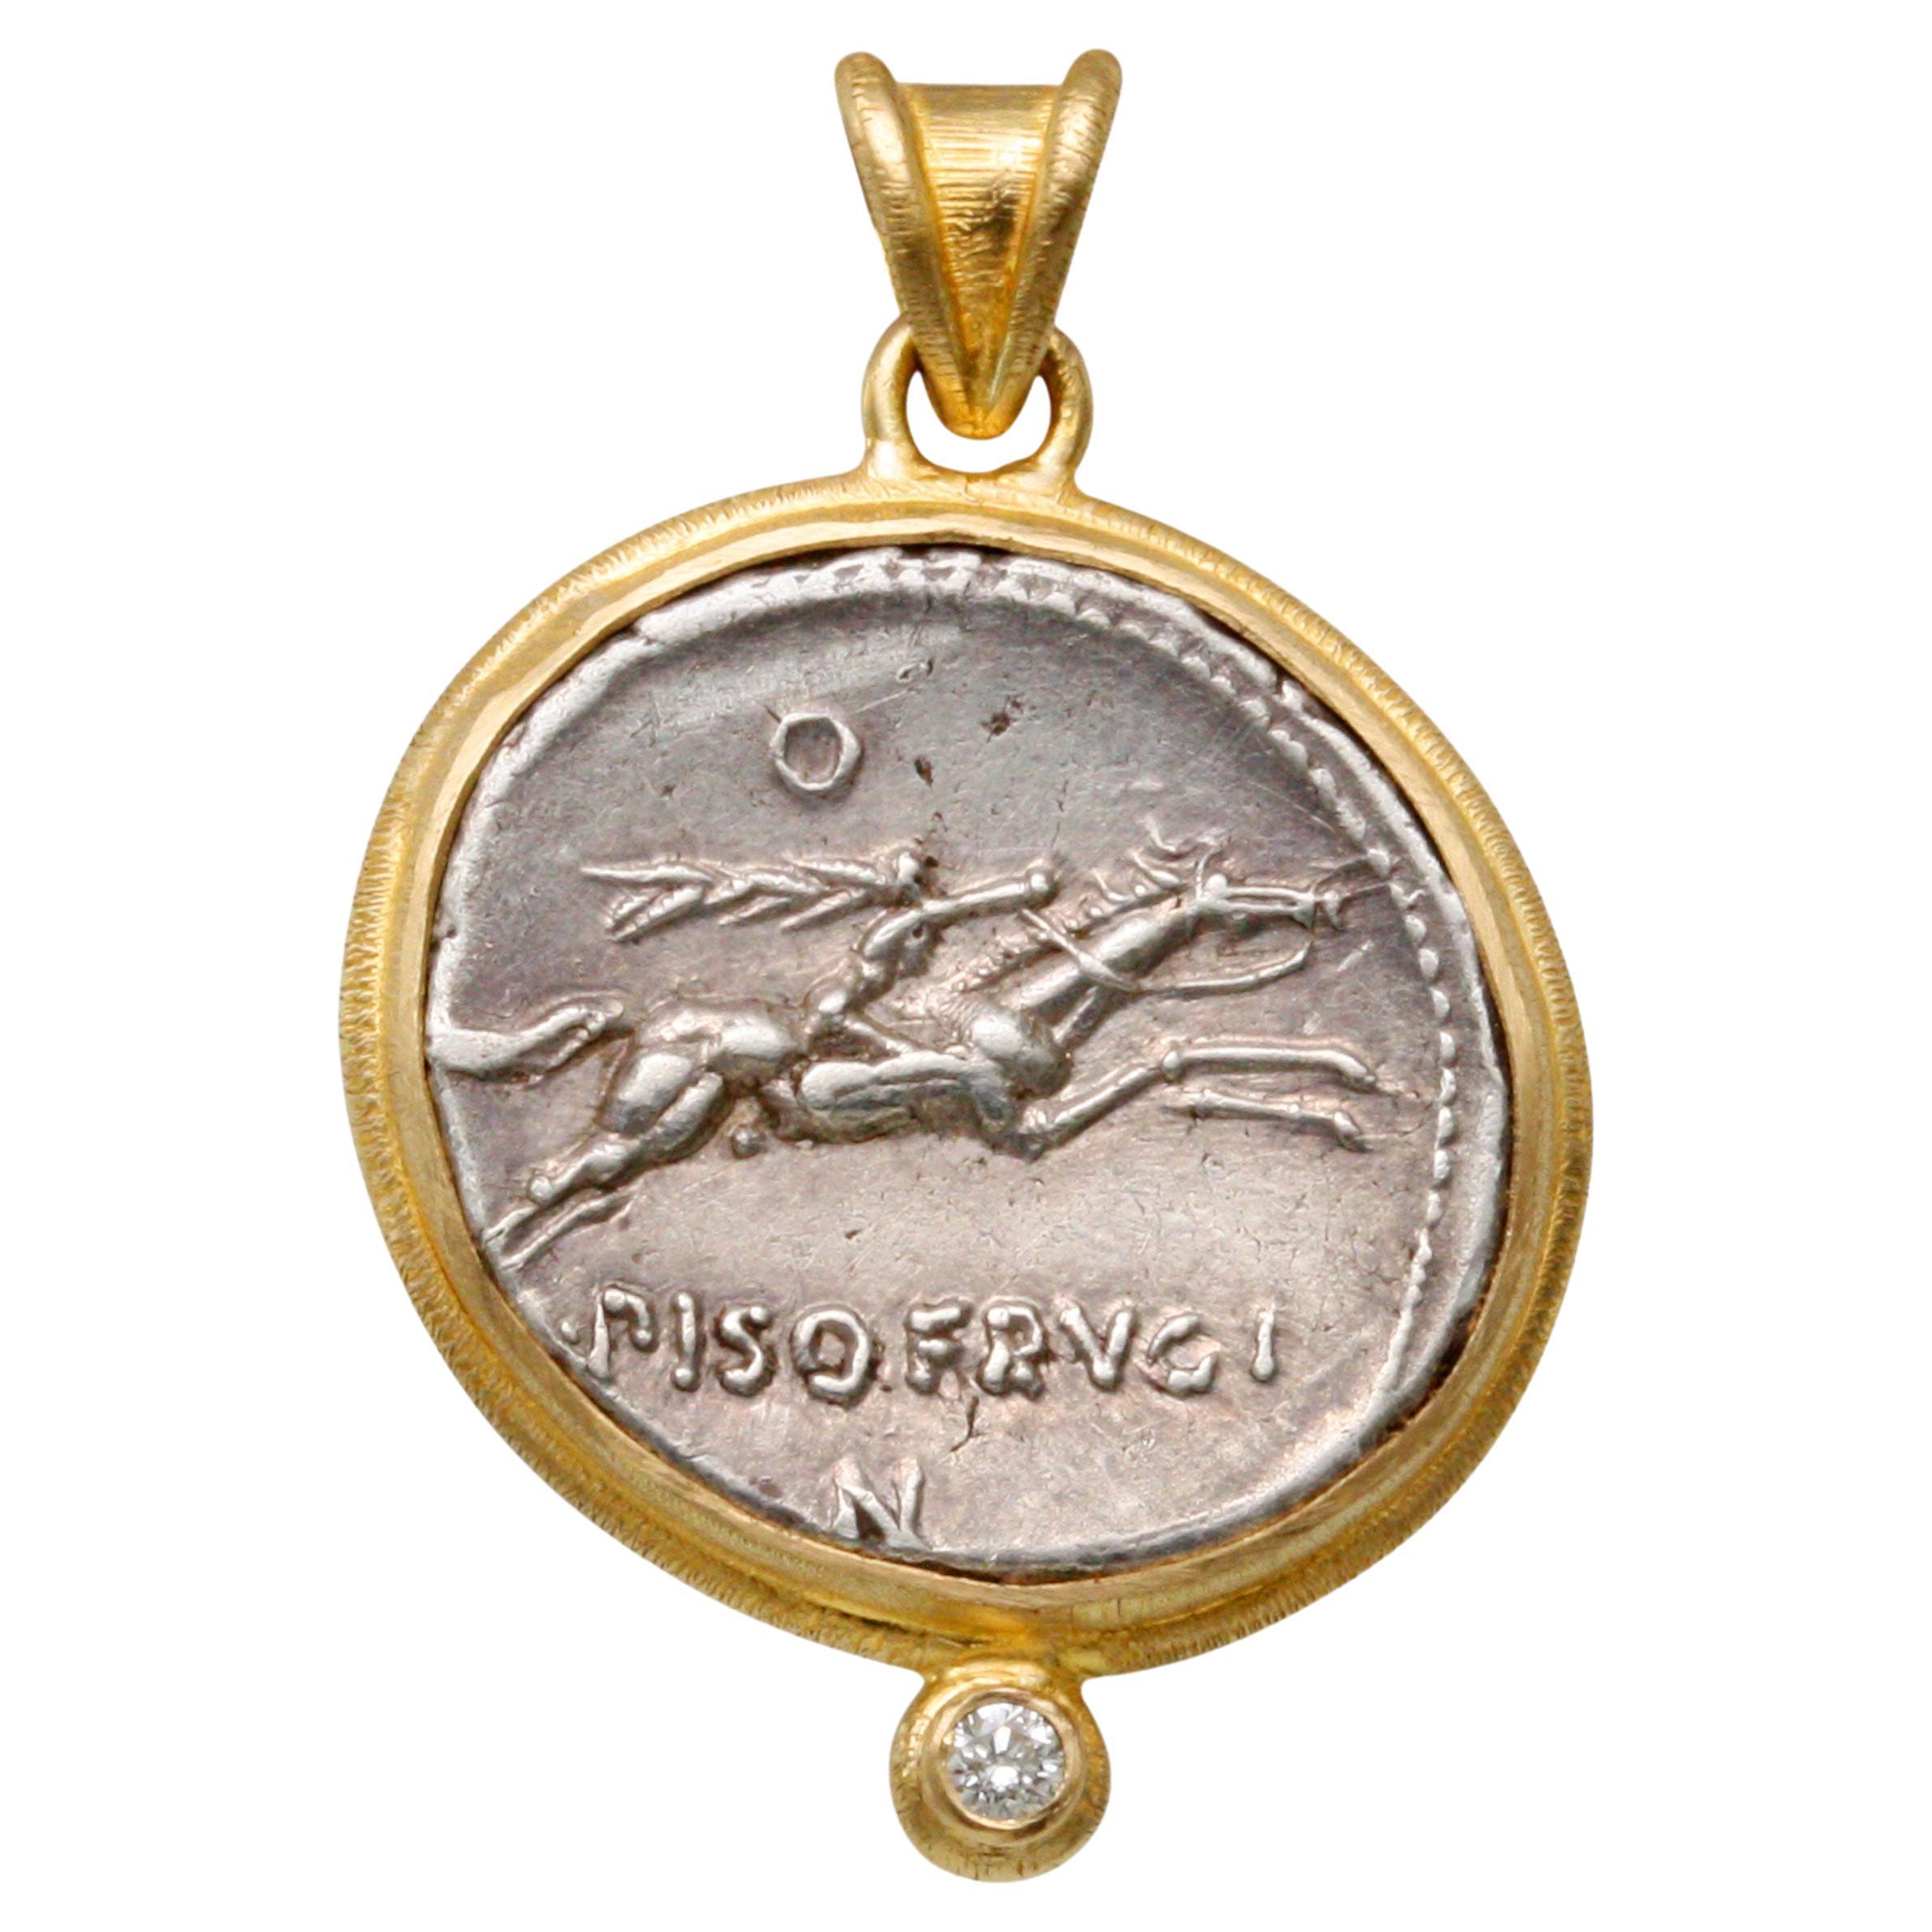 Pendentif en or 18 carats avec diamants représentant un cheval et une pièce d'équitation romaine, datant du premier siècle de notre ère avant J.-C.